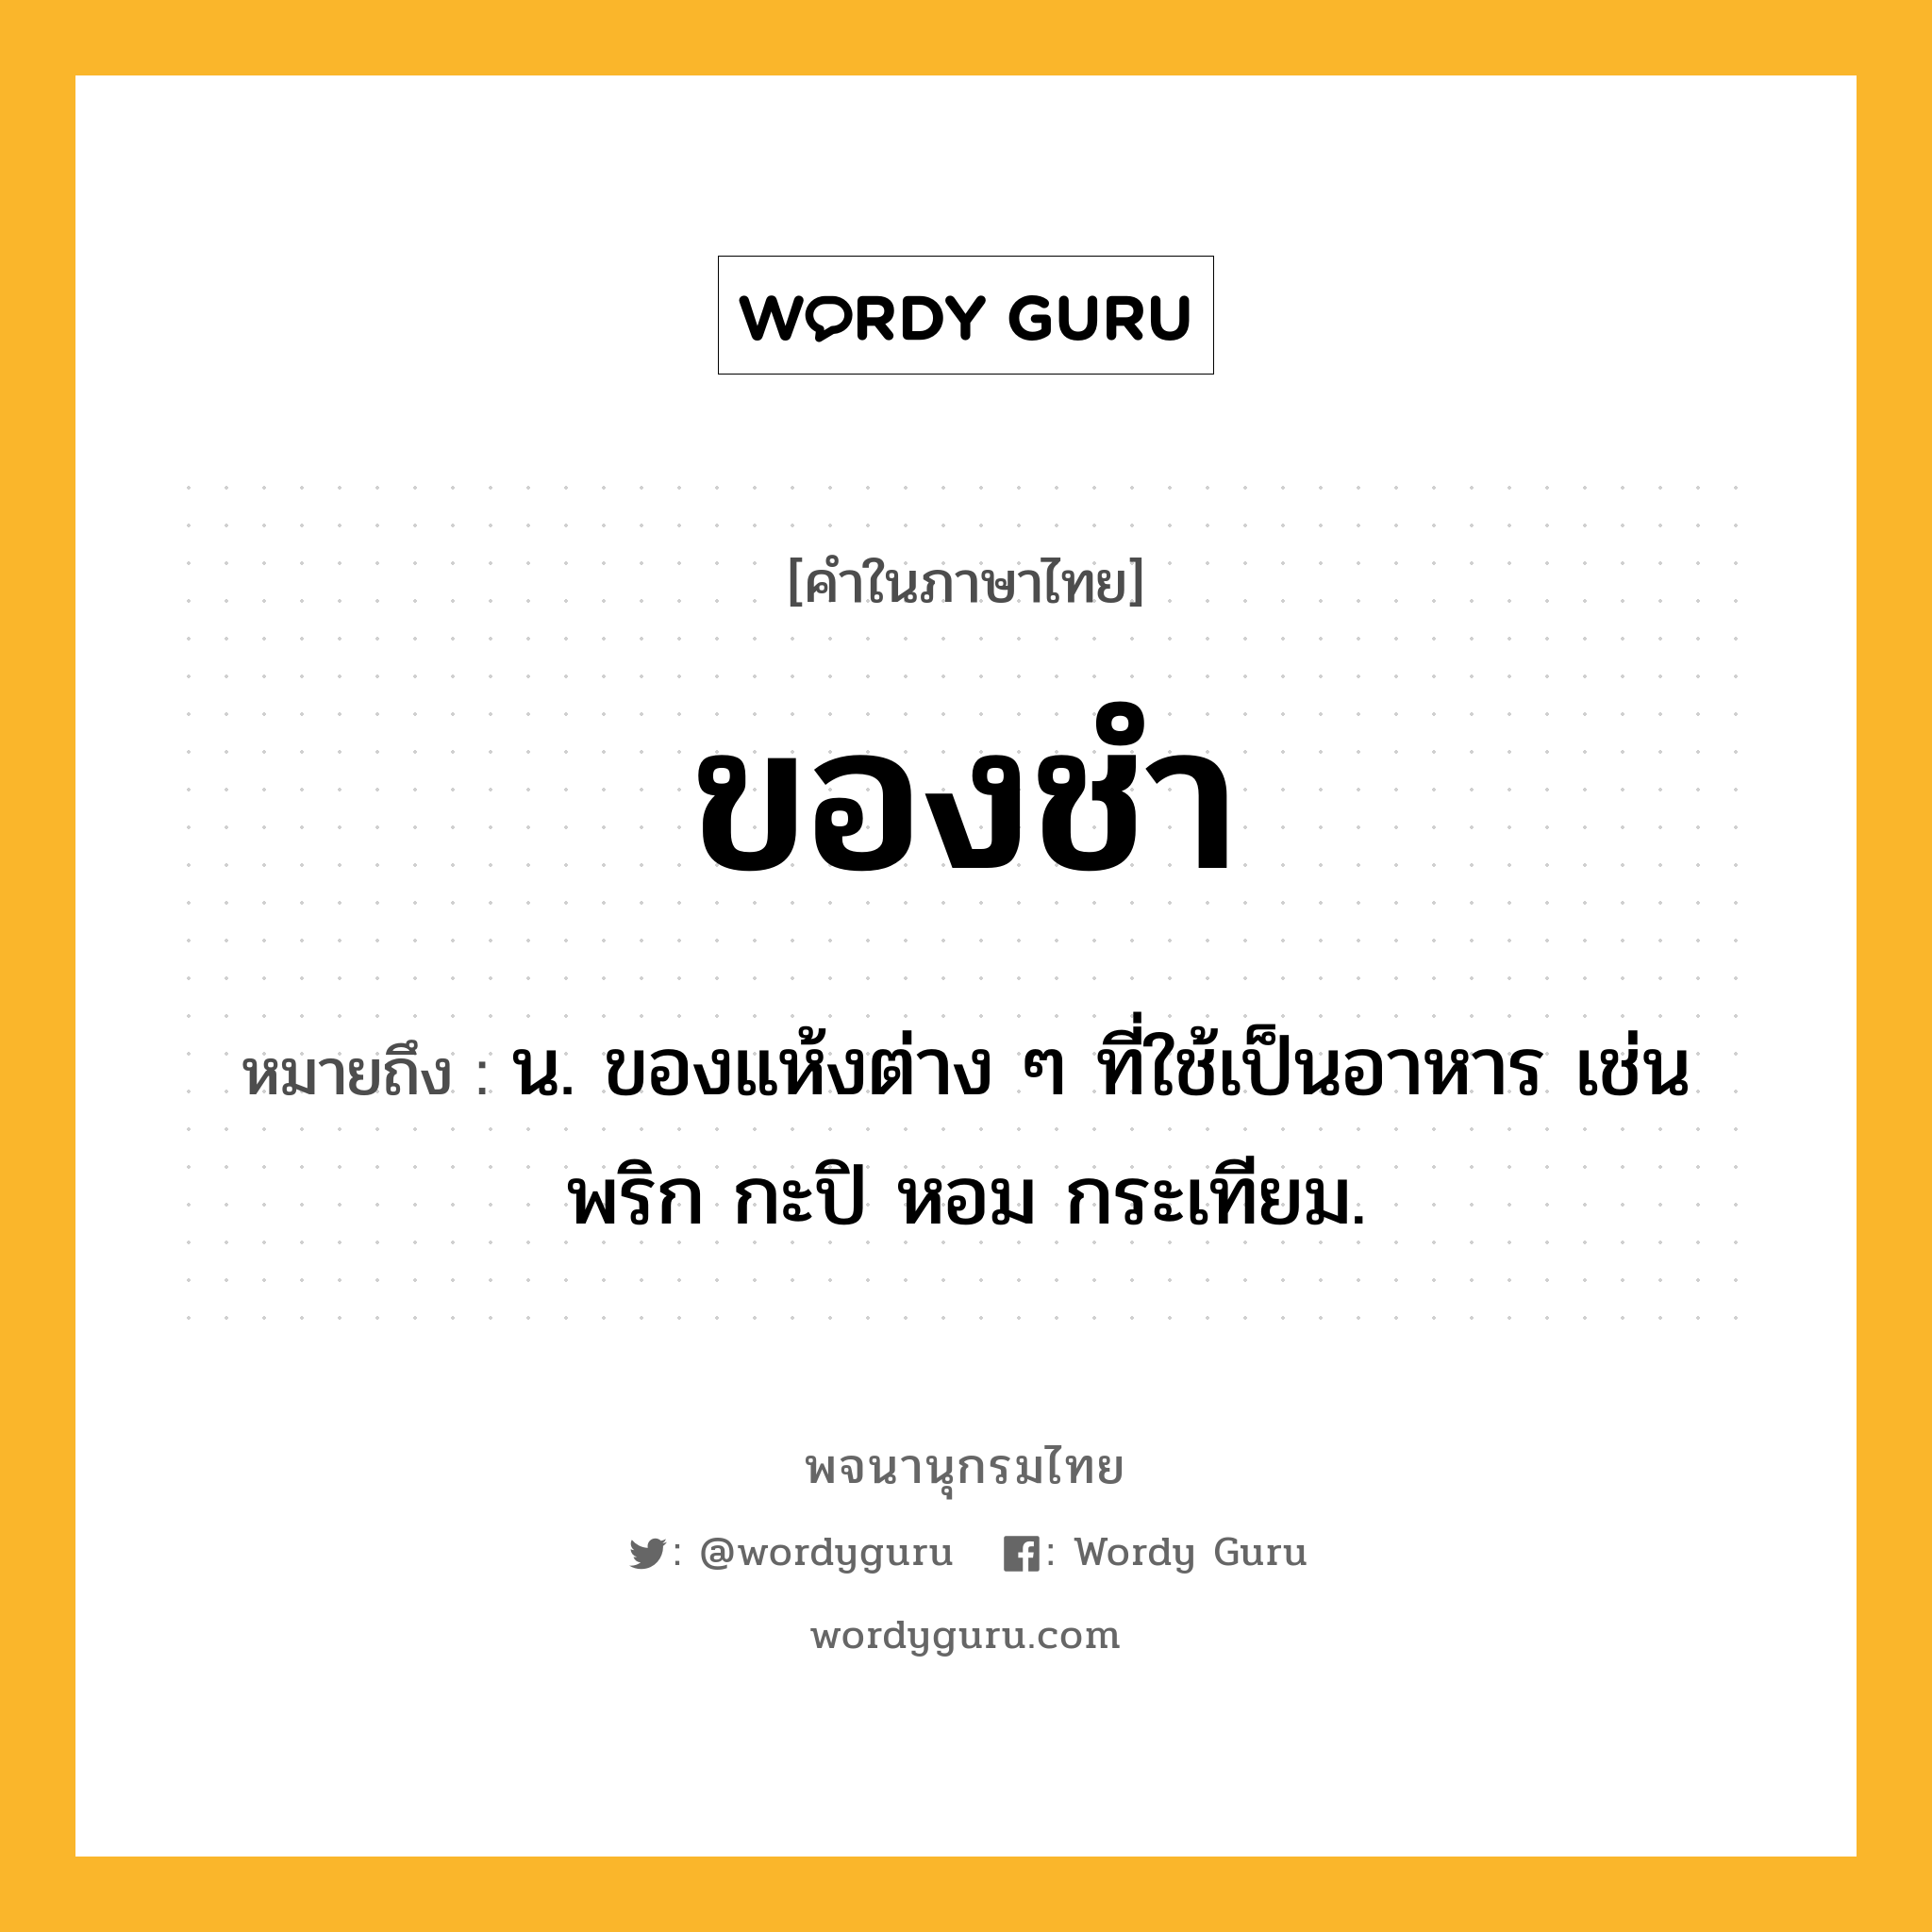 ของชำ ความหมาย หมายถึงอะไร?, คำในภาษาไทย ของชำ หมายถึง น. ของแห้งต่าง ๆ ที่ใช้เป็นอาหาร เช่น พริก กะปิ หอม กระเทียม.